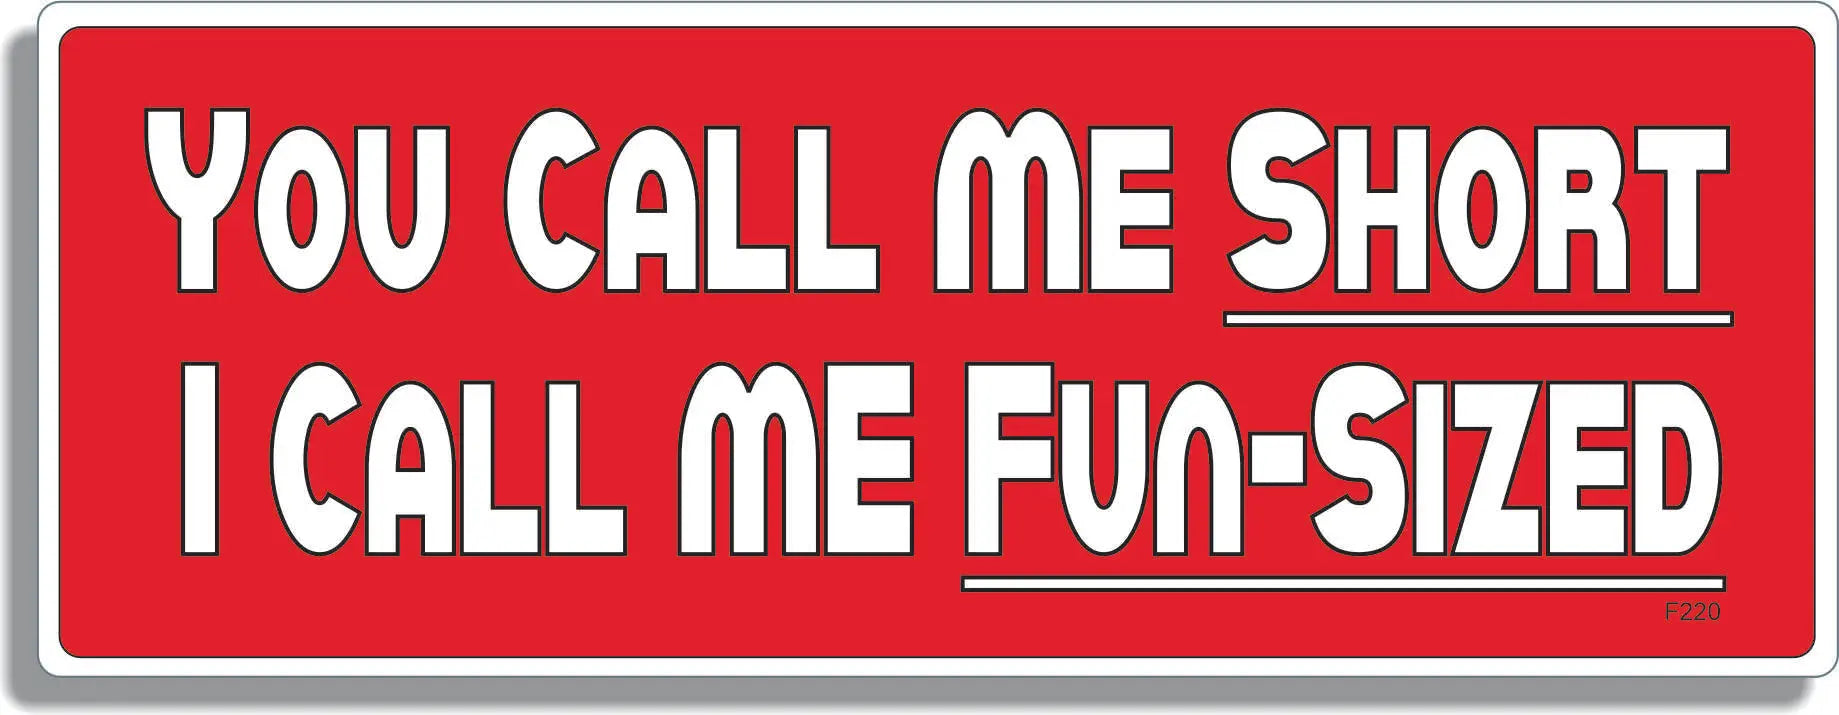 You Call Me Short, I Call Me Fun-Sized - Short Humor Bumper Sticker, Car Magnet Humper Bumper